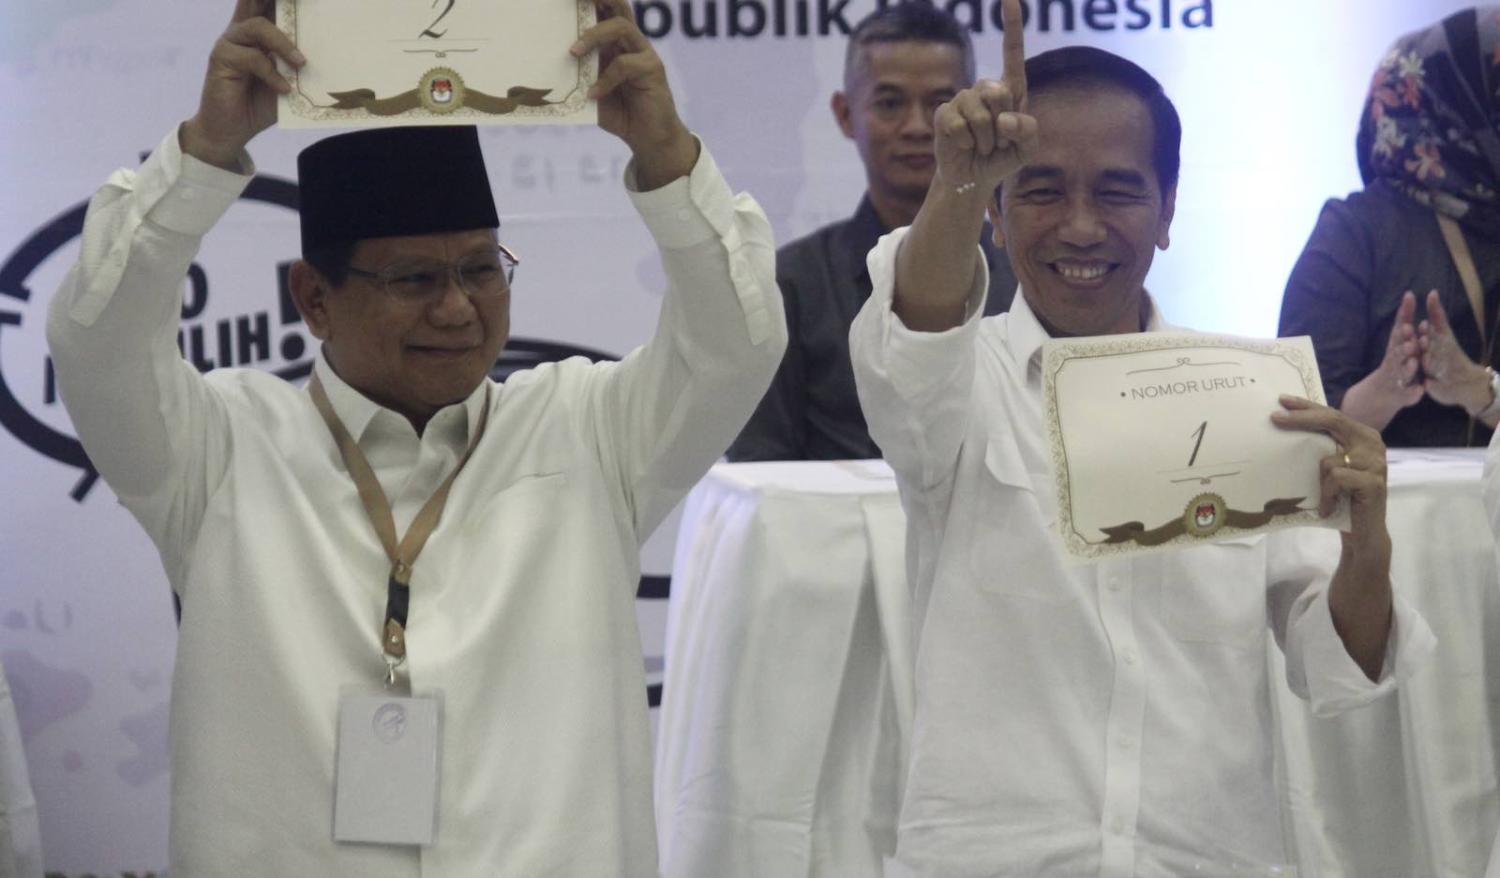 Indonesian President Joko Widodo (right) and candidate Prabowo Subianto draw ballot numbers in September (Photo: Aditya Irawan via Getty)